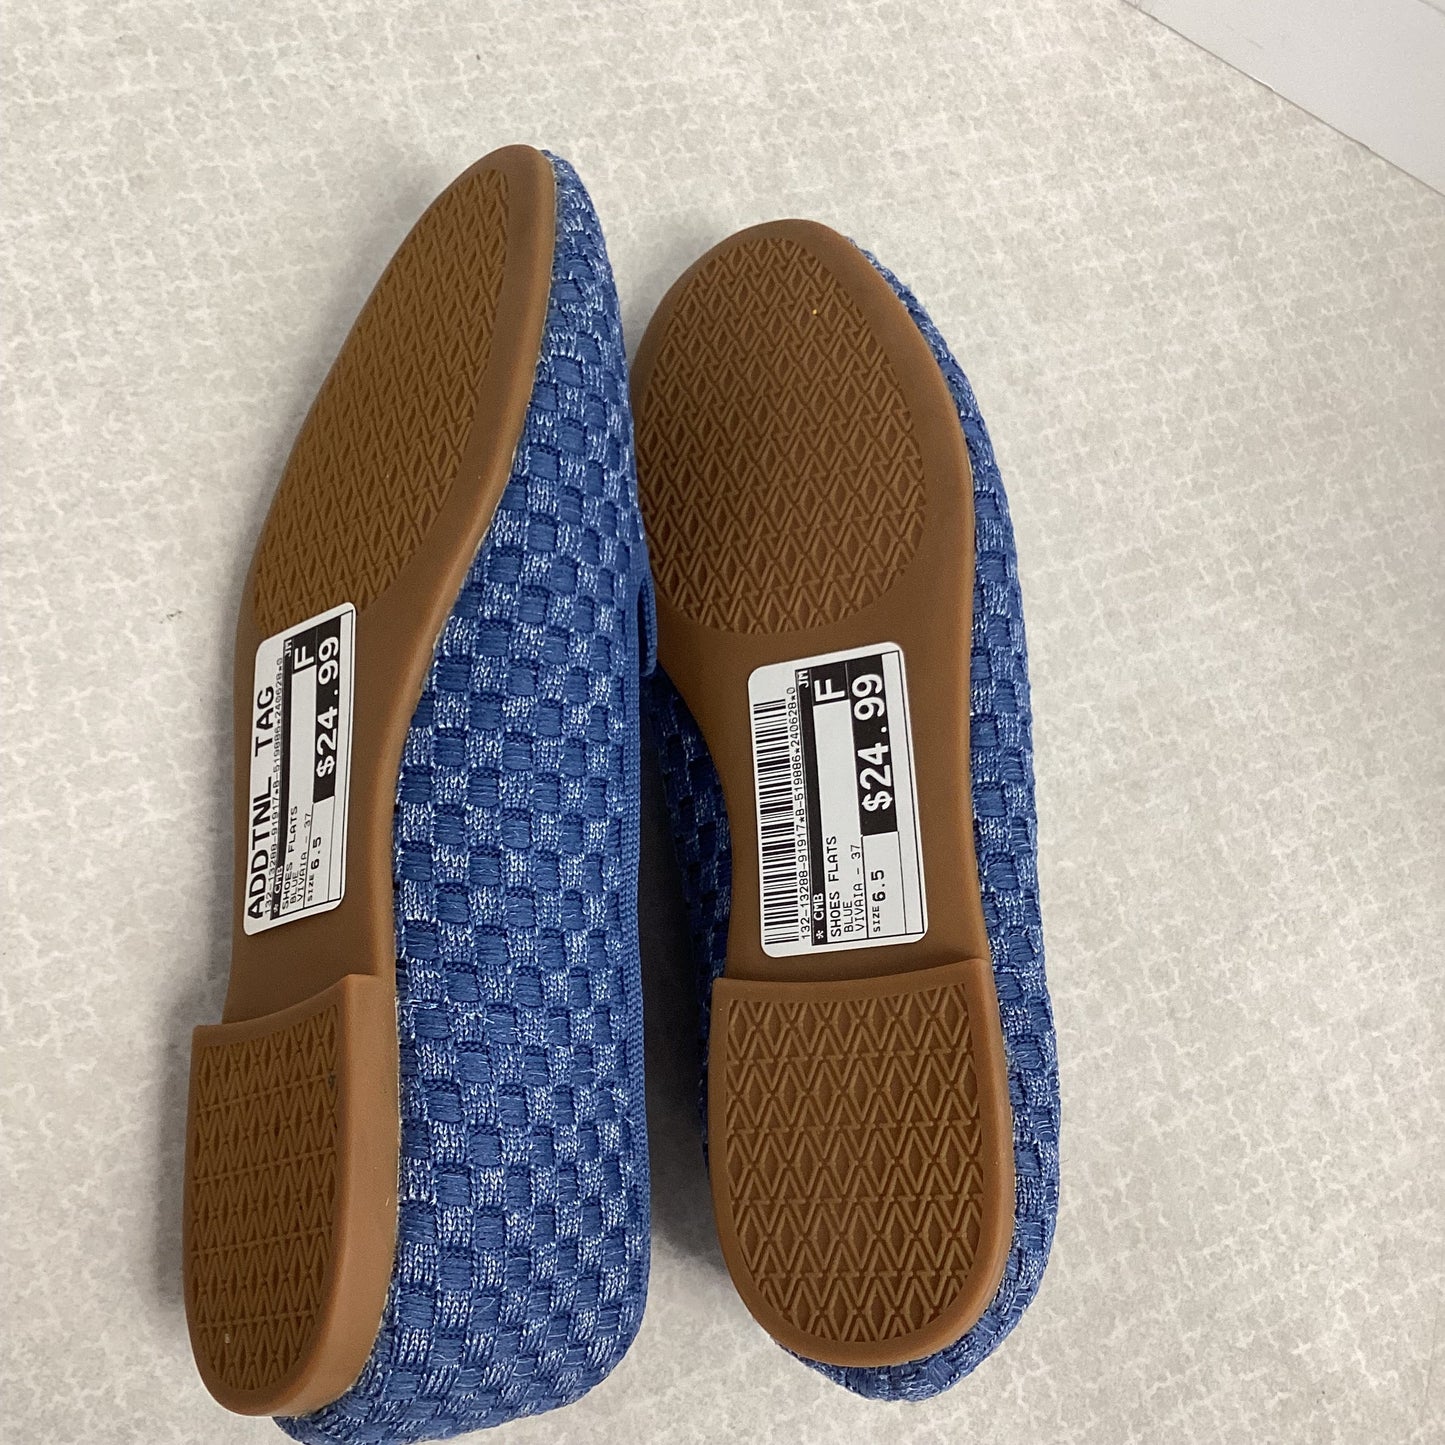 Blue Shoes Flats VIVAIA, Size 6.5